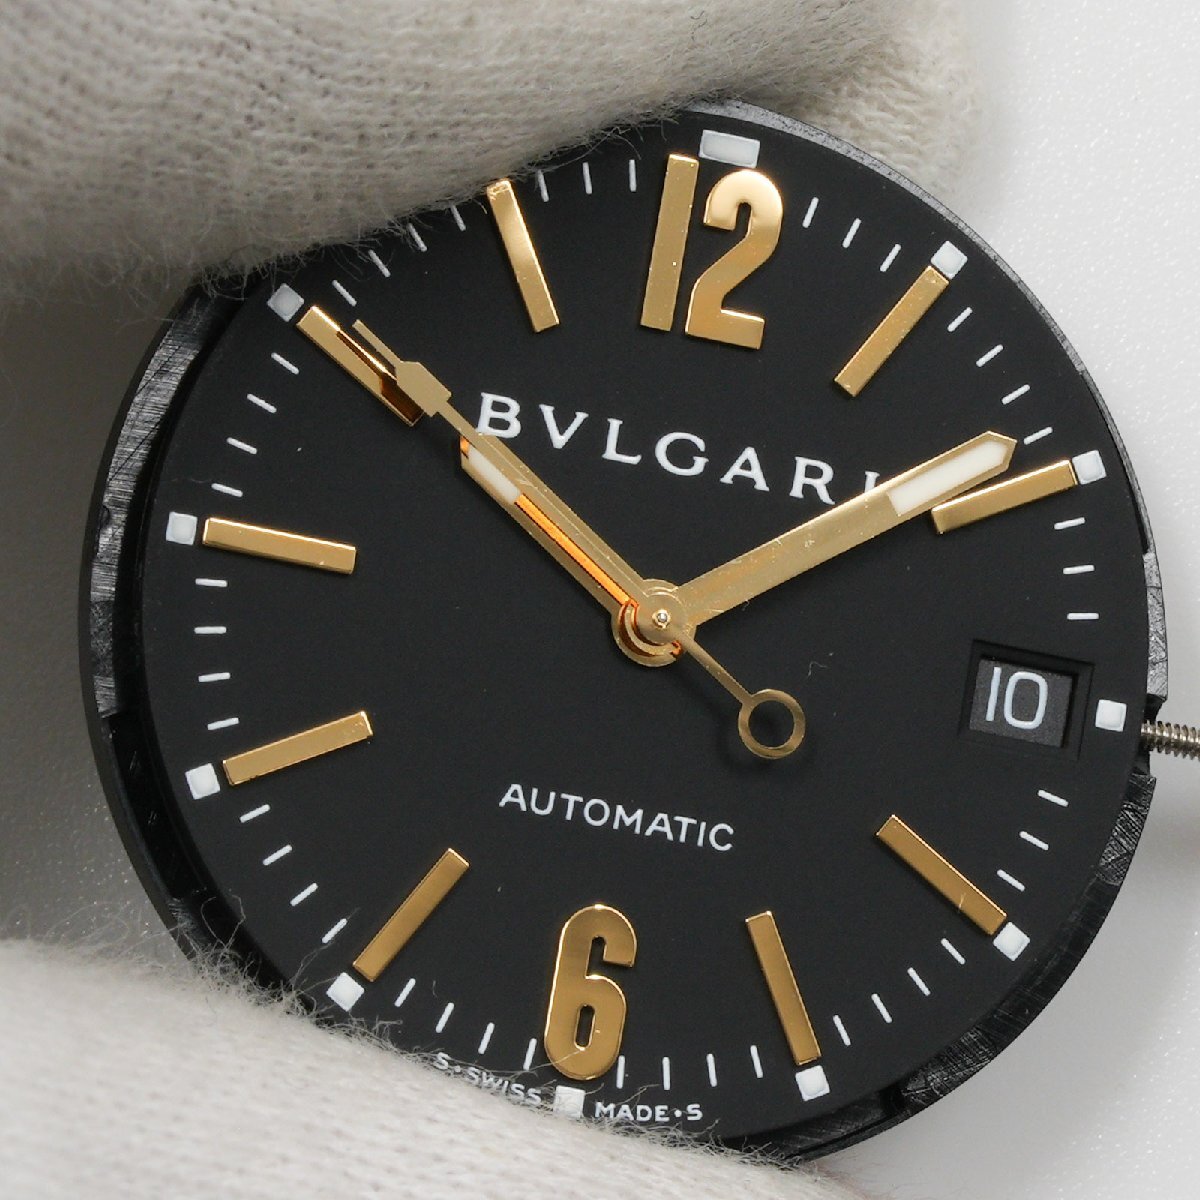 ブルガリ BVLGARI 腕時計 ムーブメント Cal. 220 ディアゴノ外し 自動巻 中古 動作品 [質イコー]の画像2